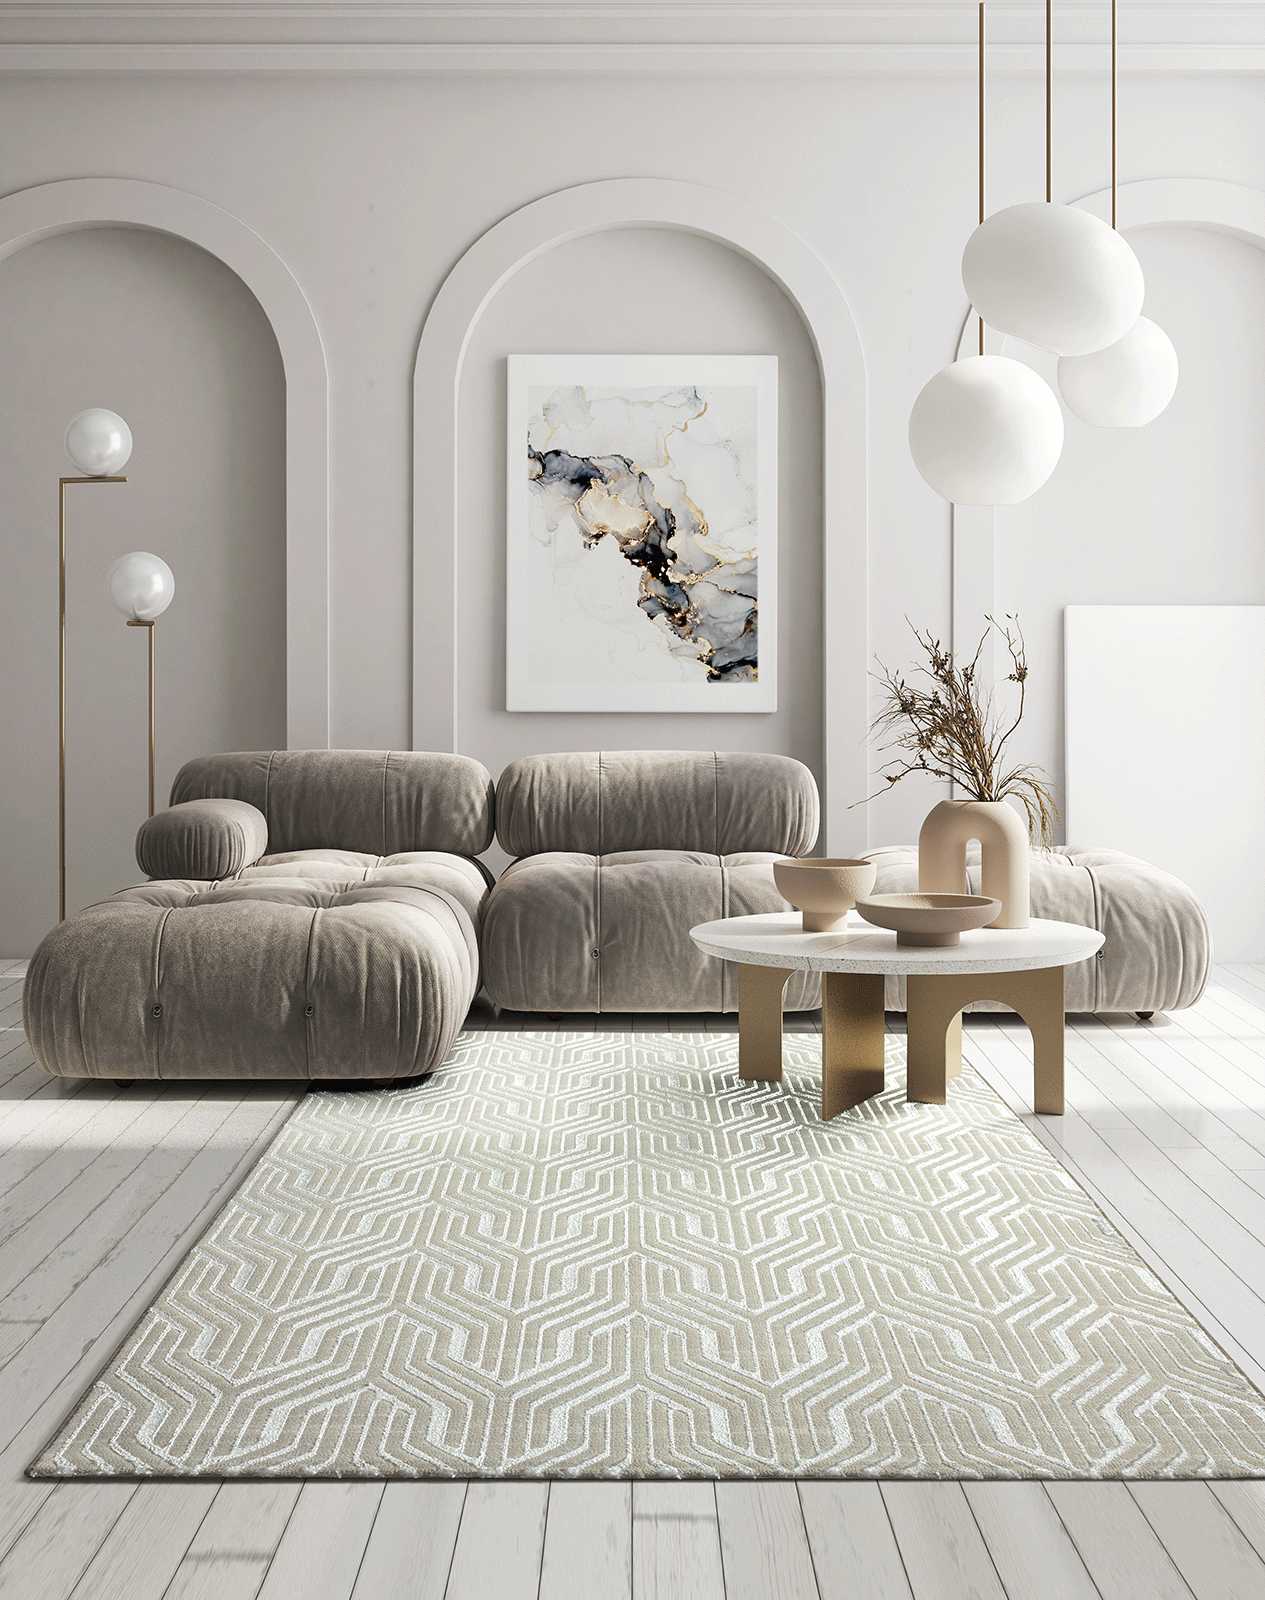 Soft pile carpet in cream - 150 x 80 cm
